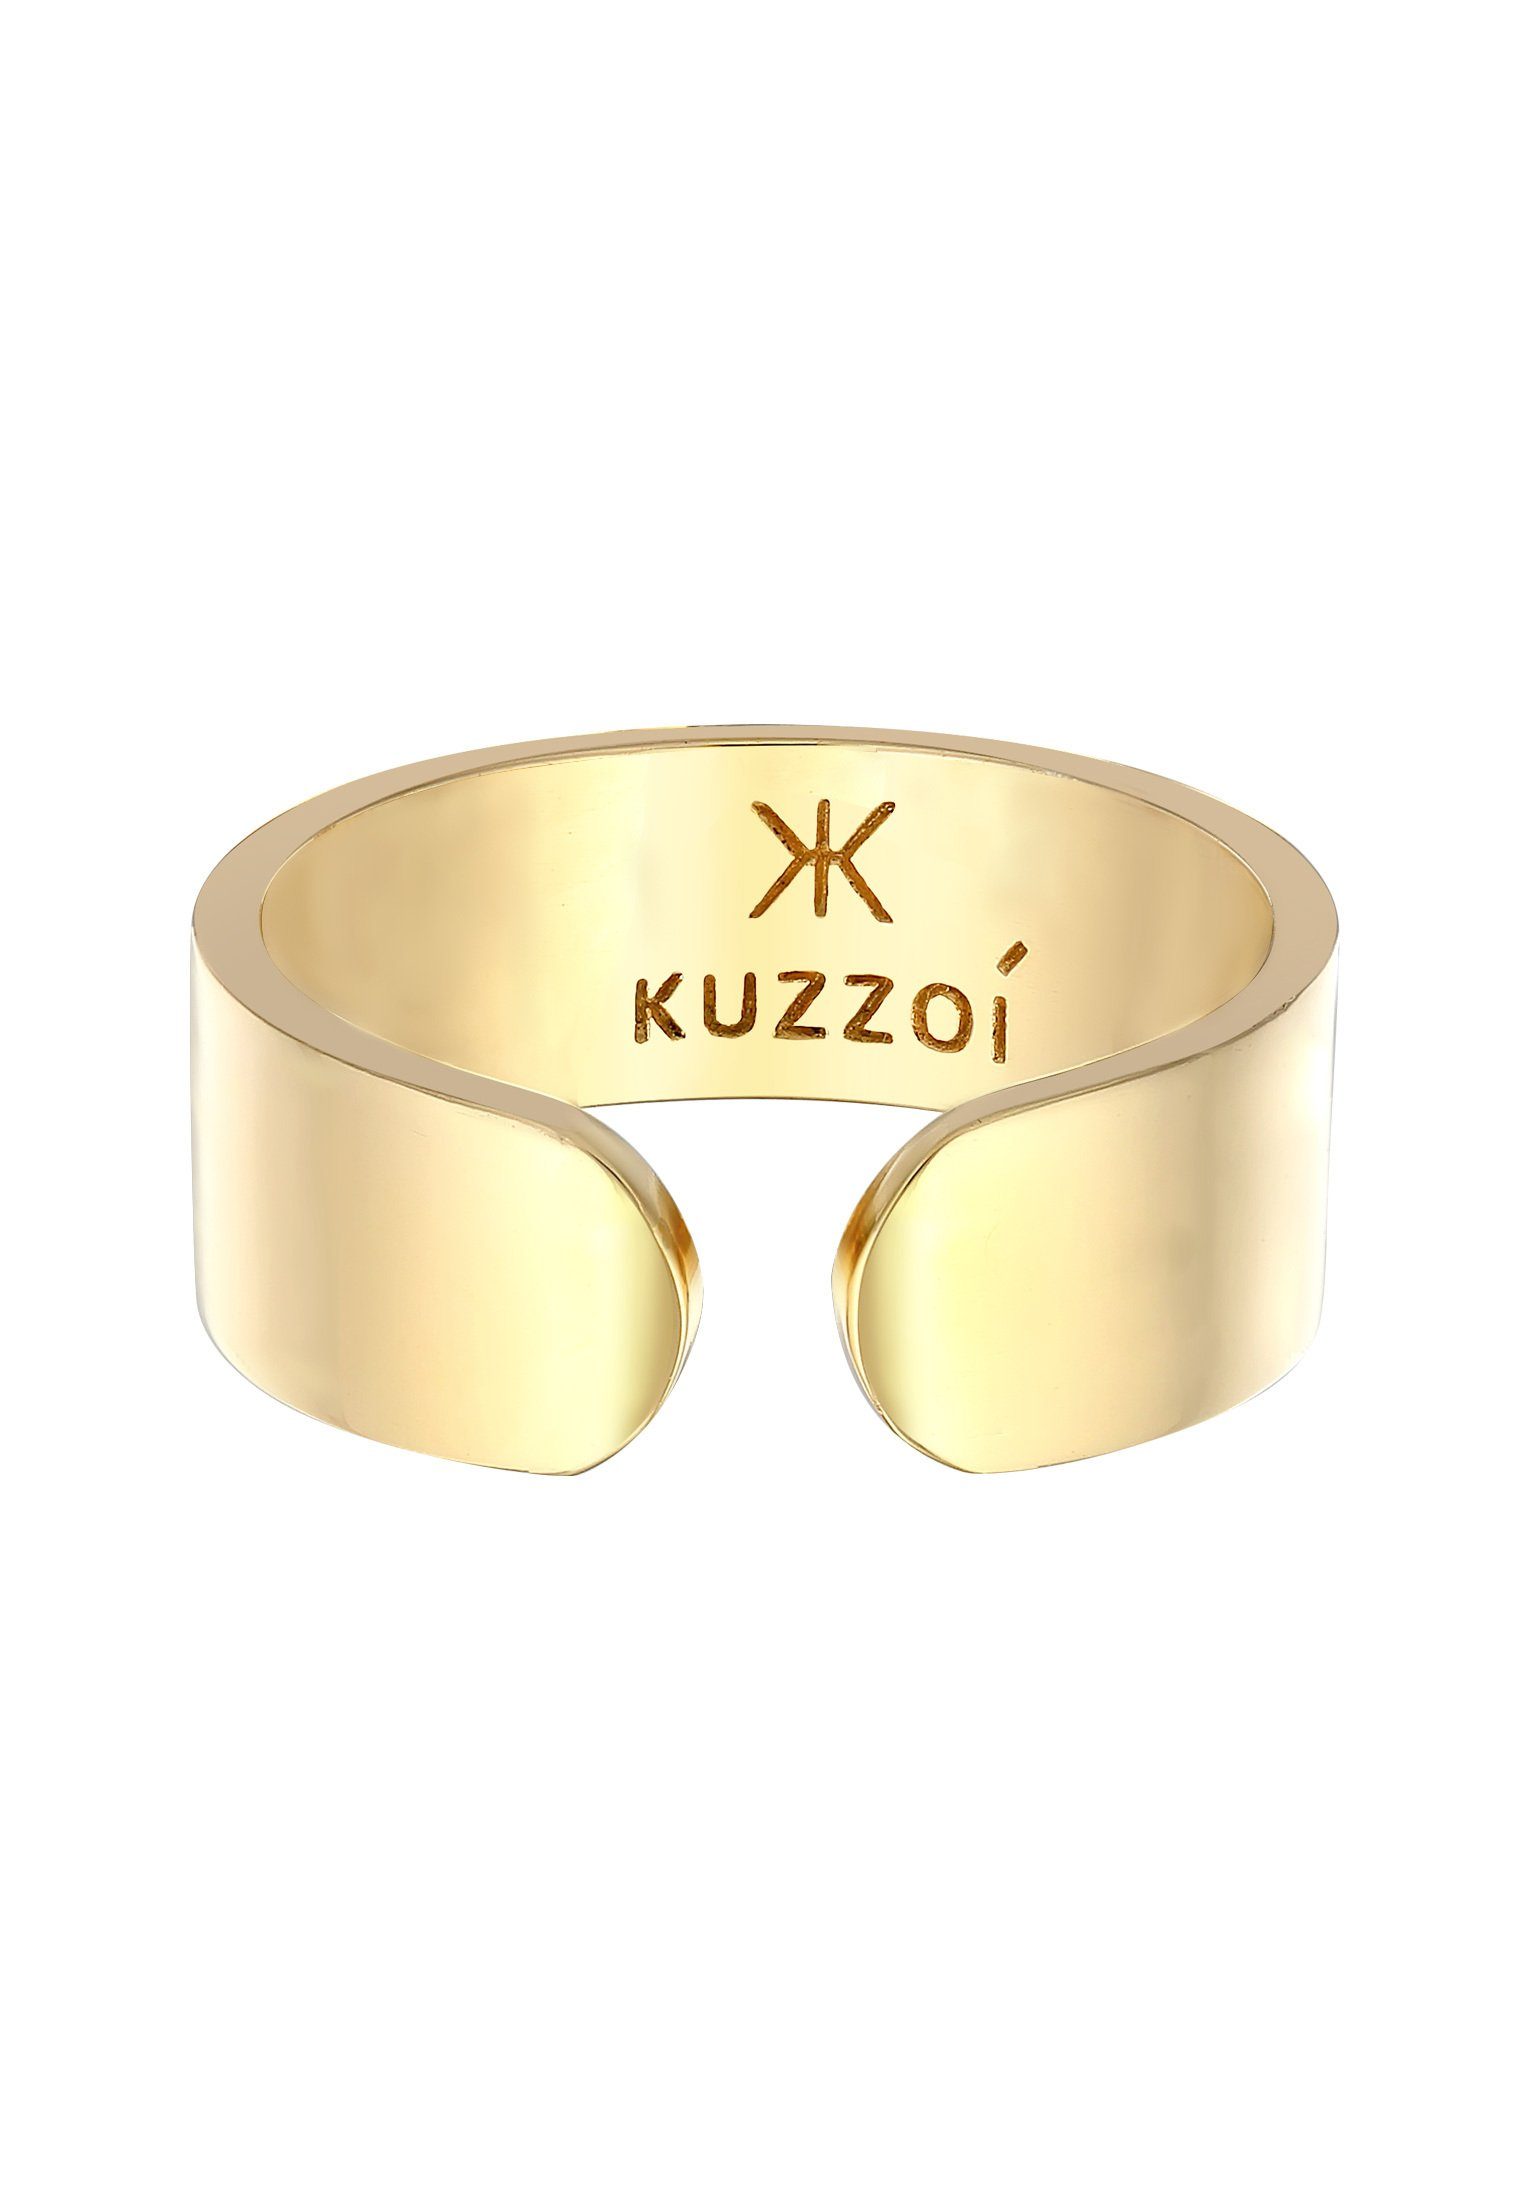 Offen Klares Gold Kuzzoi Bandring Silberring Design Silber 925